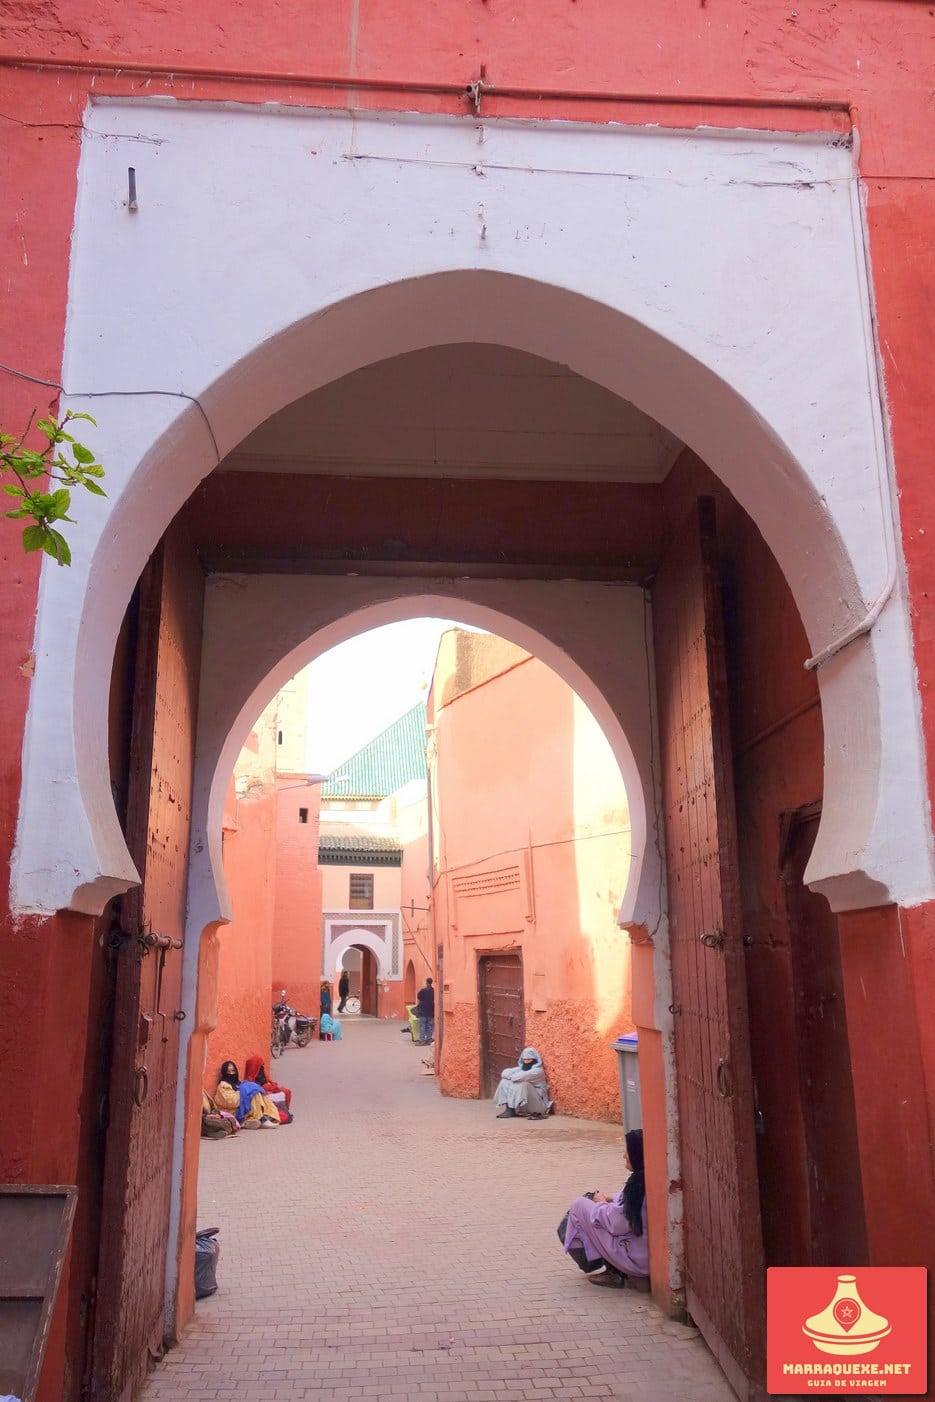 Entrada da Zaouia de Sidi Bel Abbès em Marraquexe